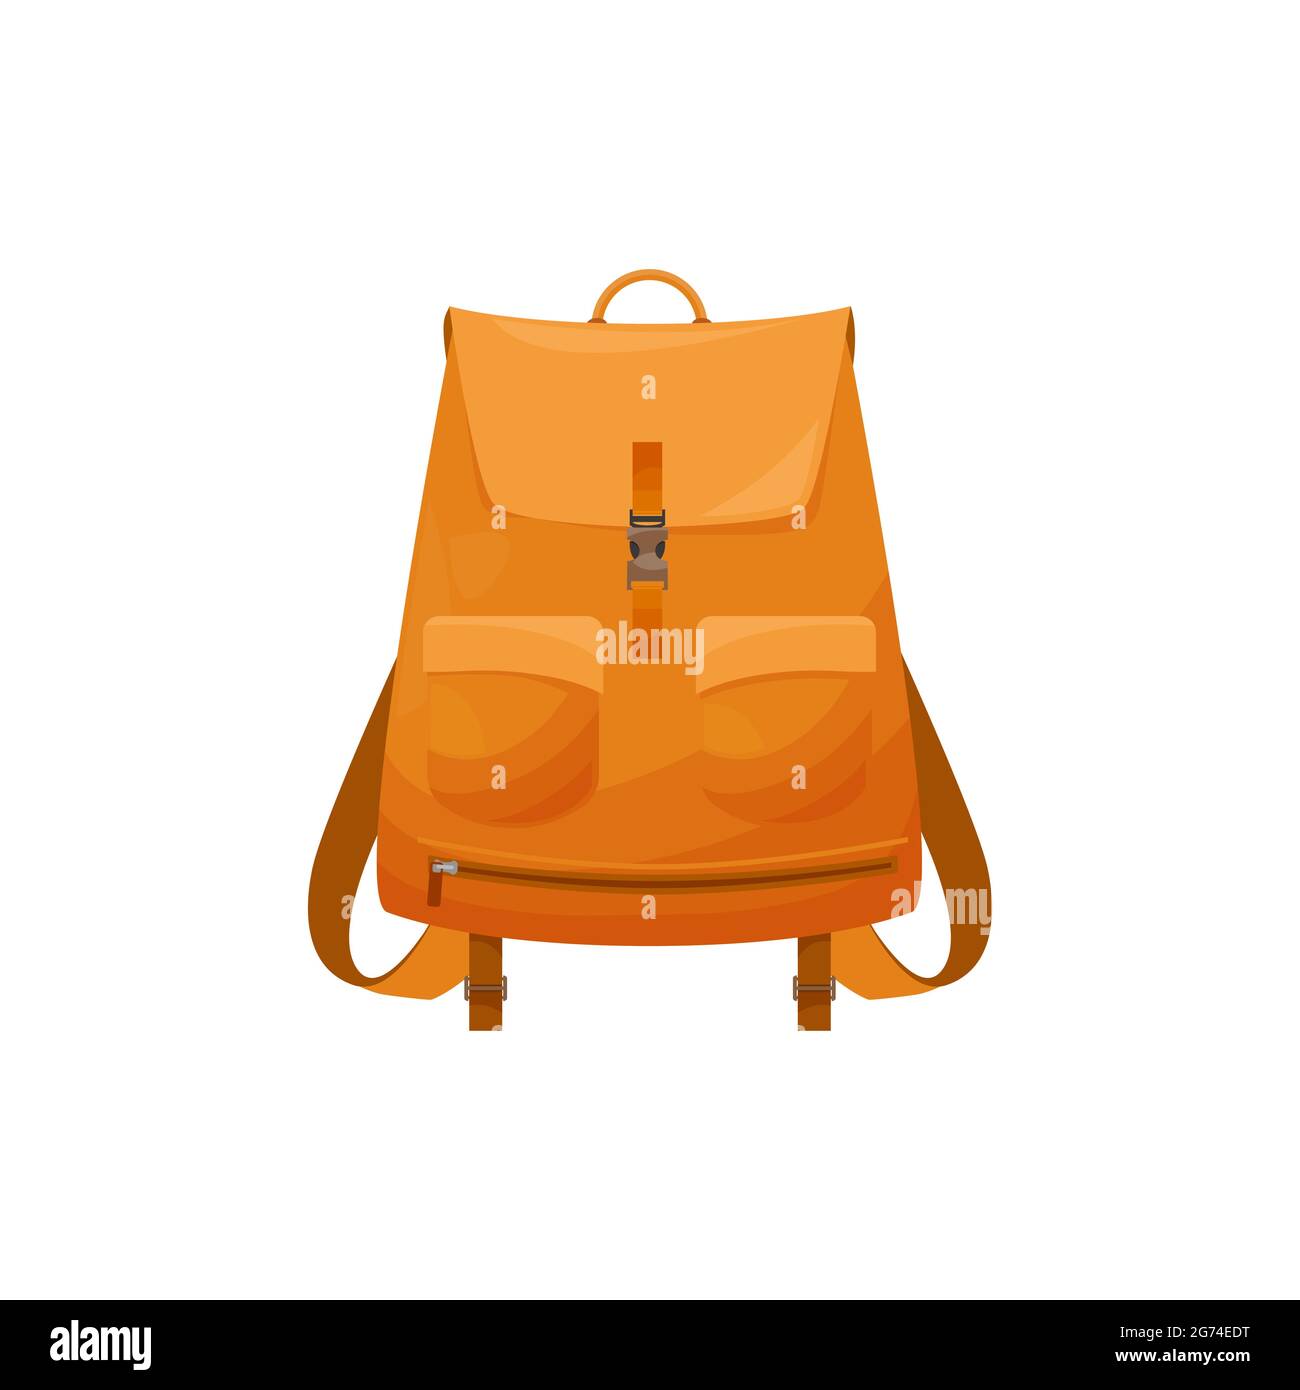 Kinder Schultasche isoliert Vektor-Symbol, Cartoon Rucksack der orangen Farbe, Schüler oder Wanderrucksack, touristische Rucksack oder Schultasche auf weißem Backgroun Stock Vektor